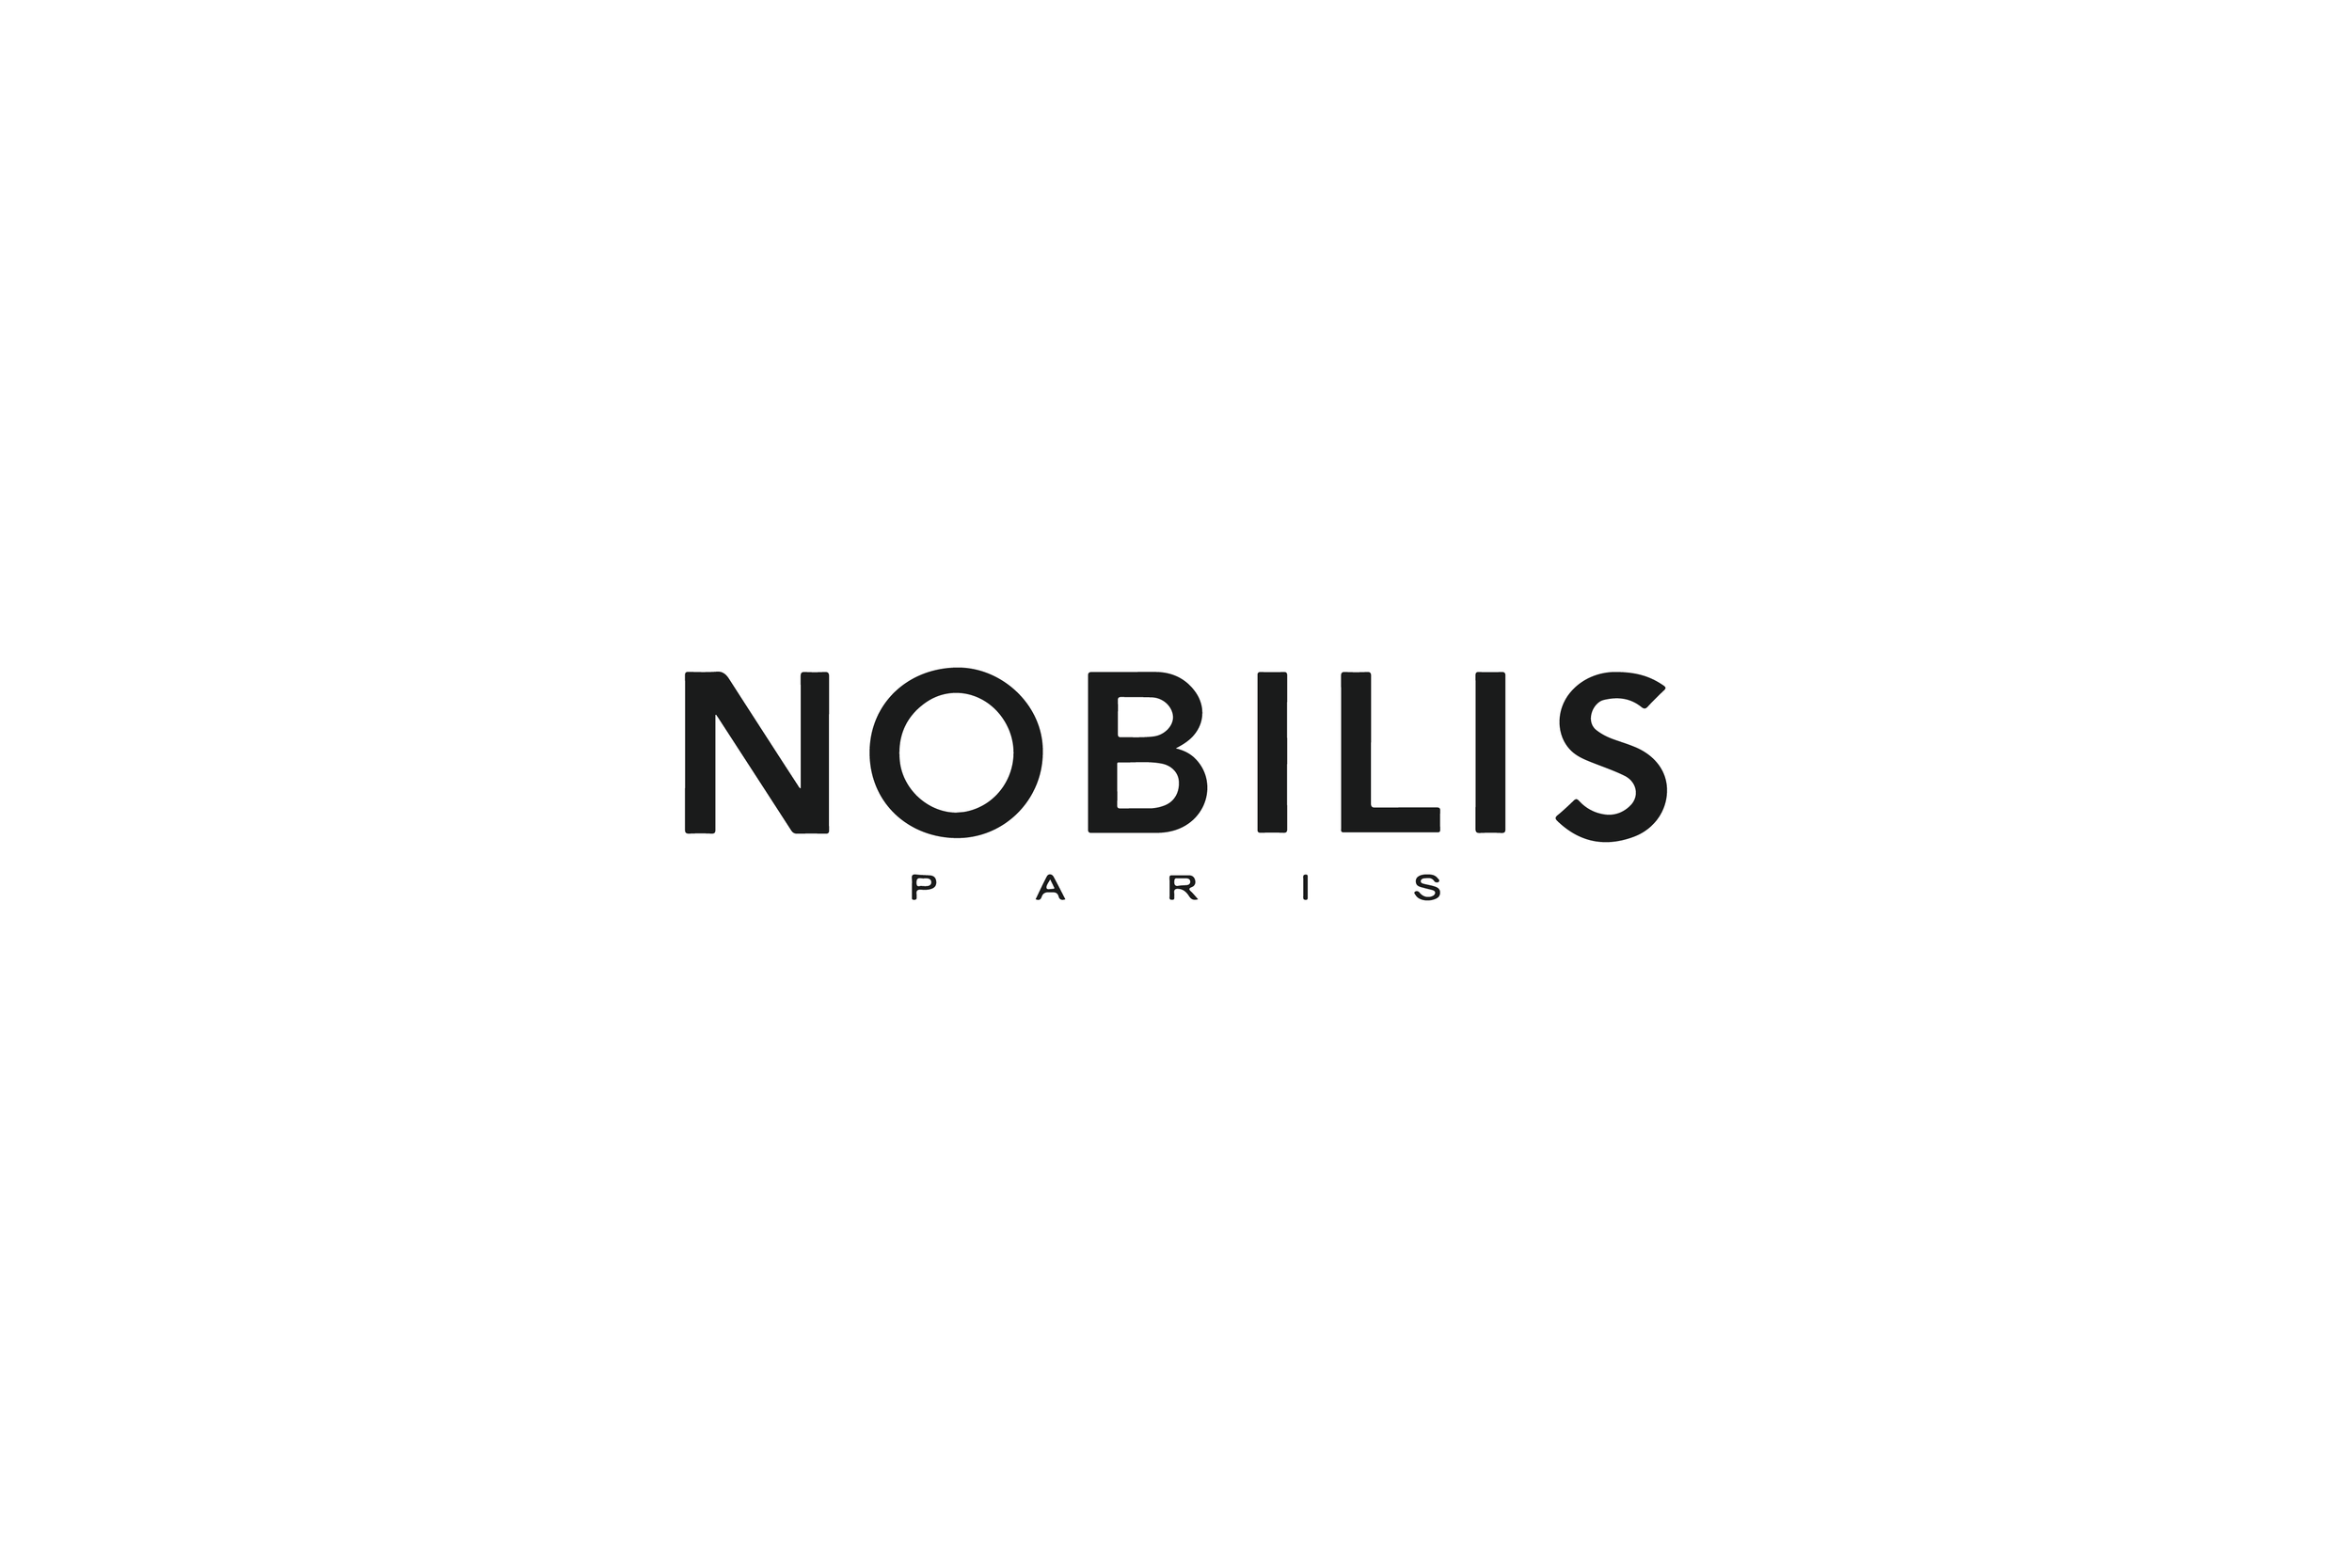 Nobills-01.png